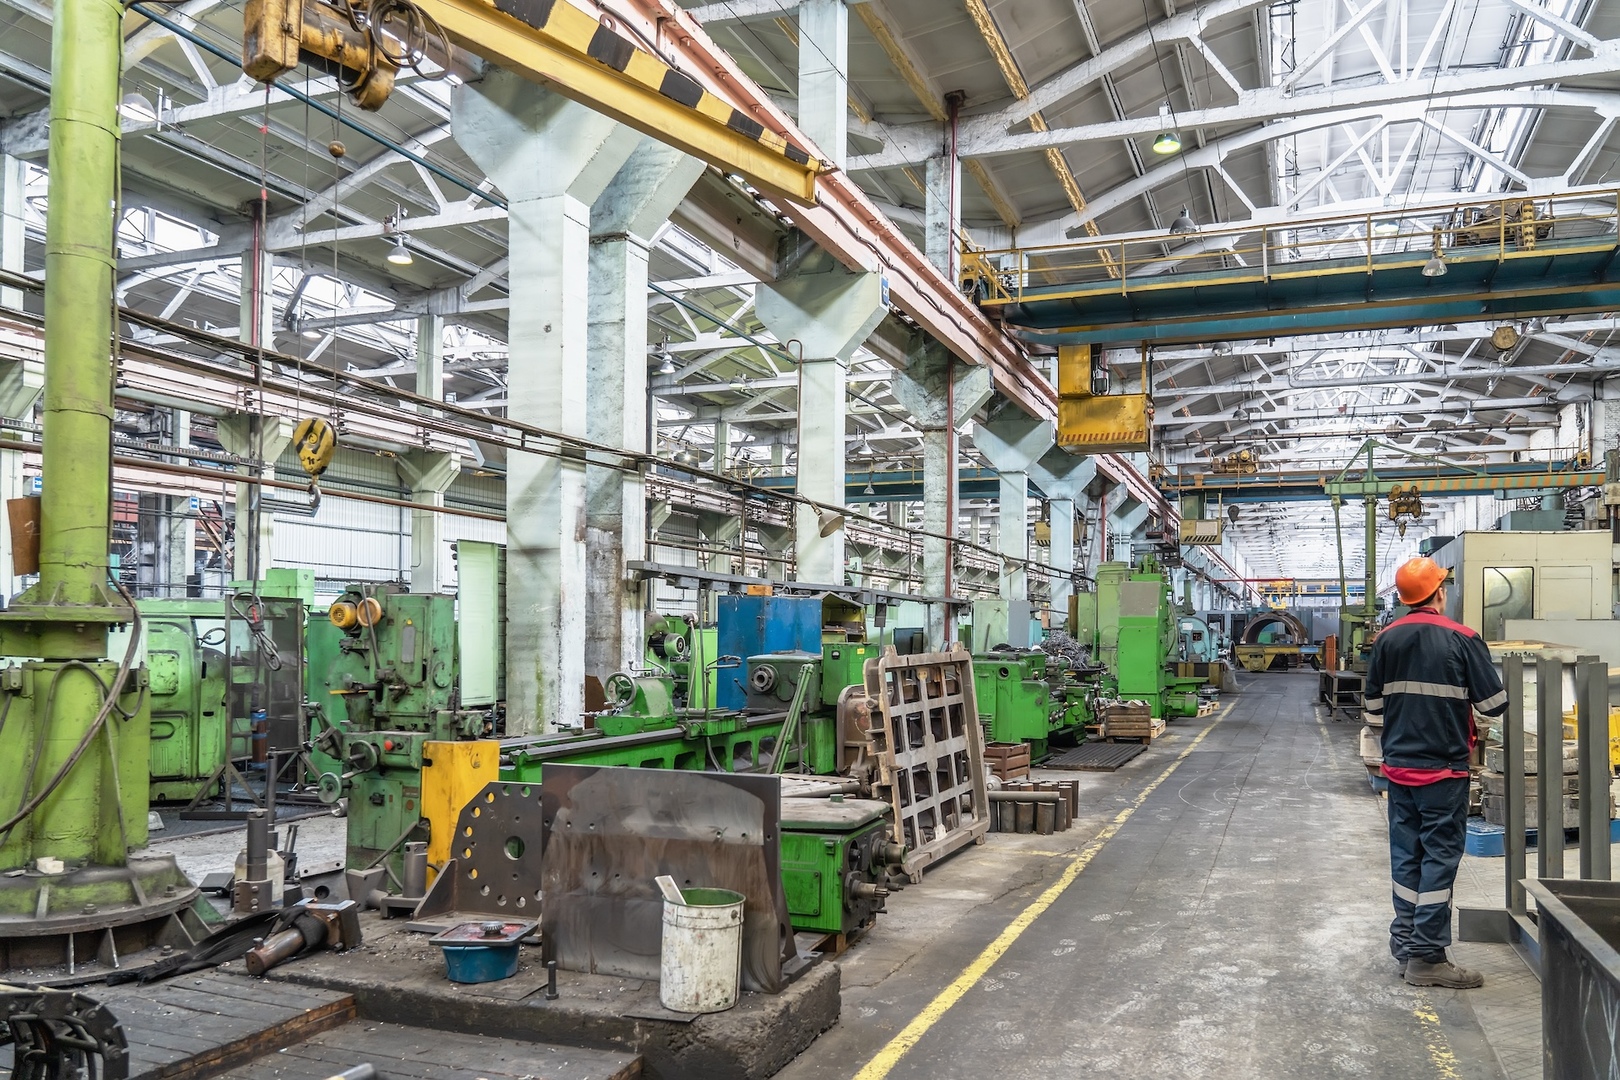 Metallwarenfabrik mit Maschinen und Drehbänken für die Metallverarbeitung